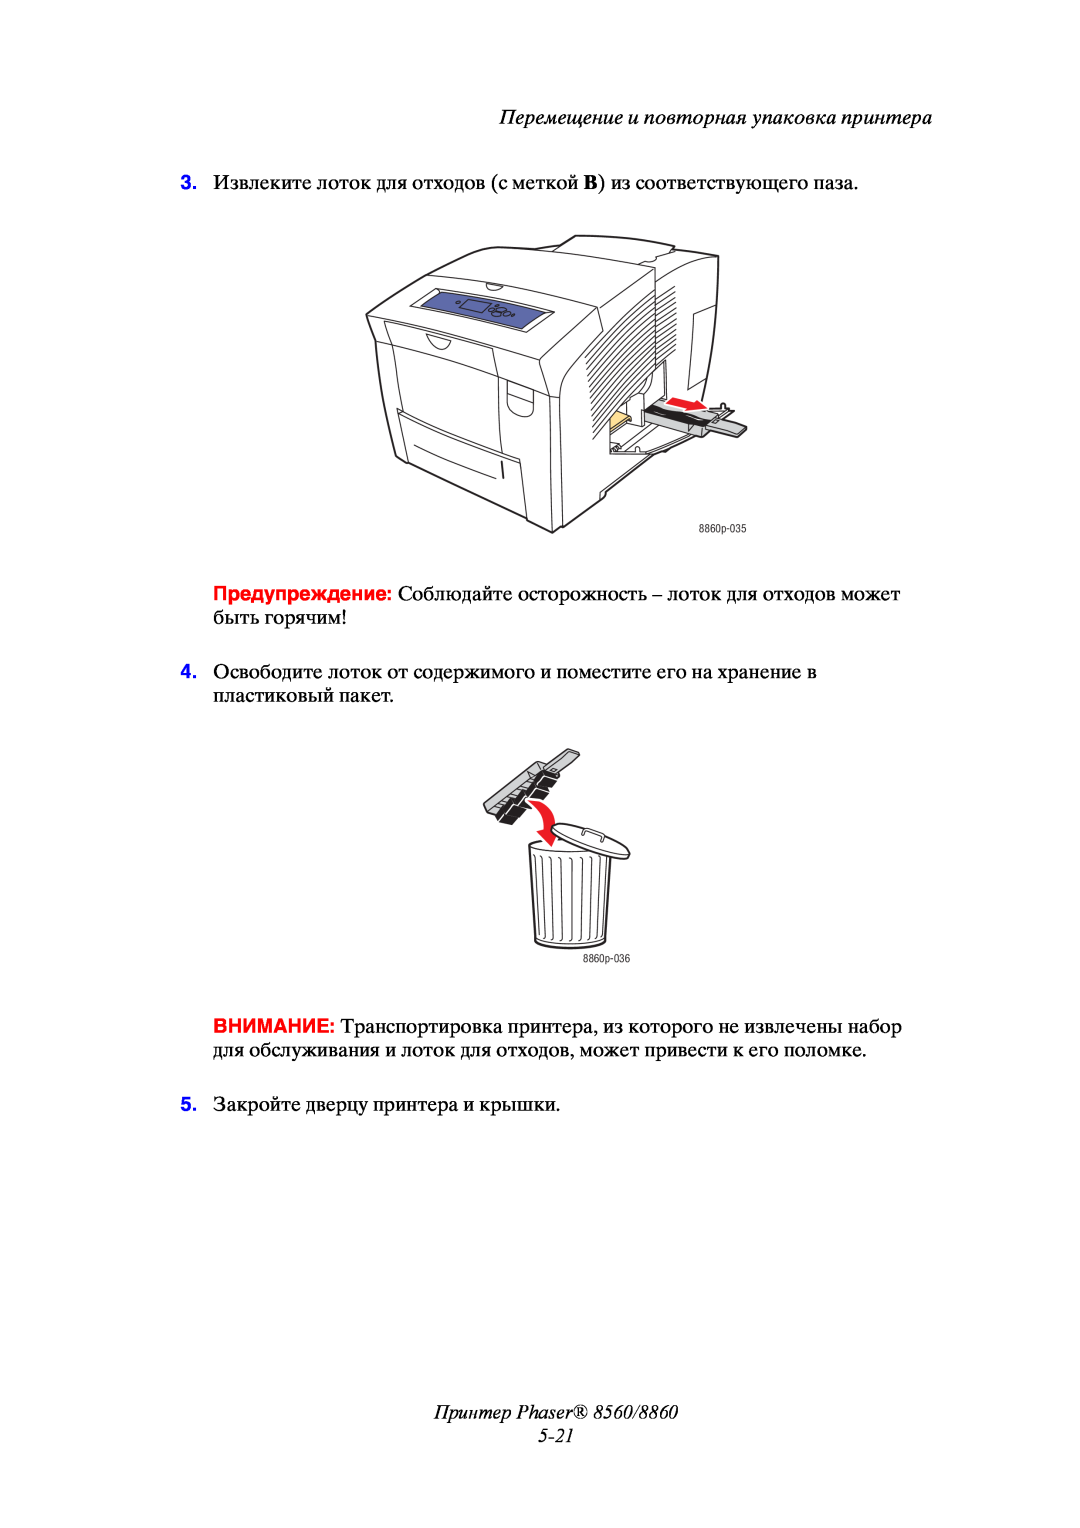 Xerox manual Принтер Phaser 8560/8860 5-21, Перемещение и повторная упаковка принтера 